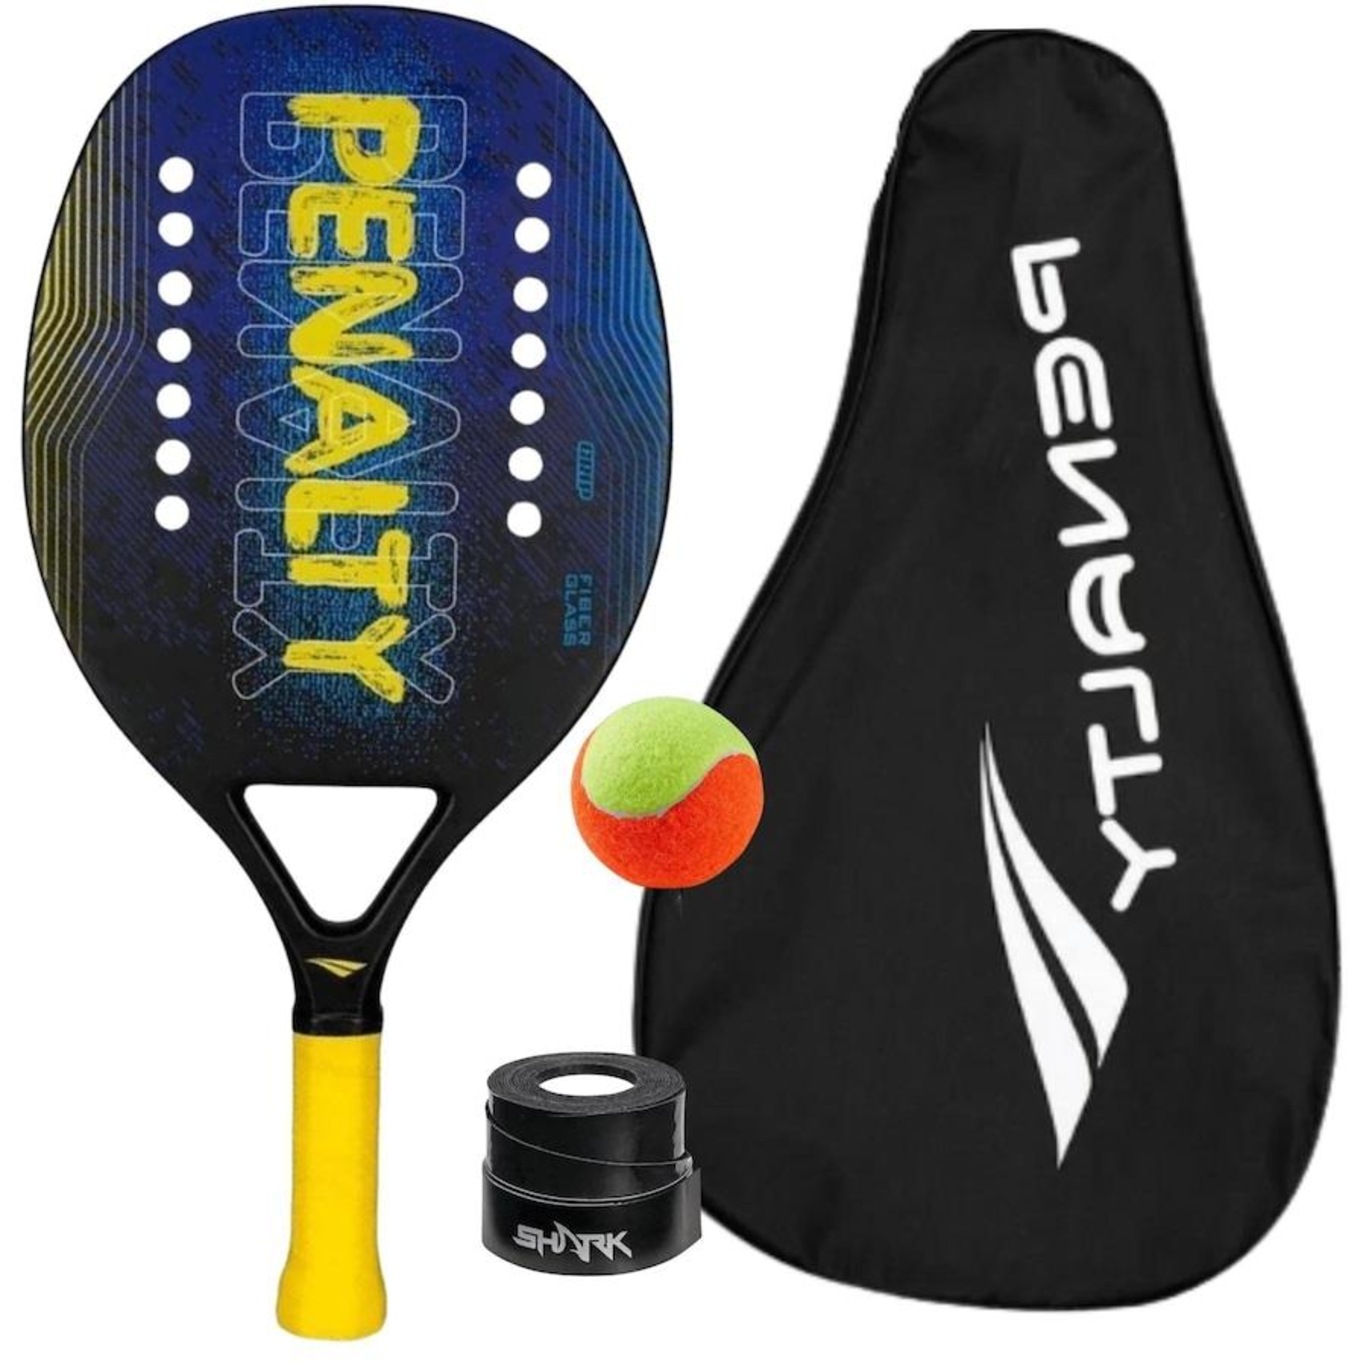 Raquete e bola para a competição de jogos de tênis